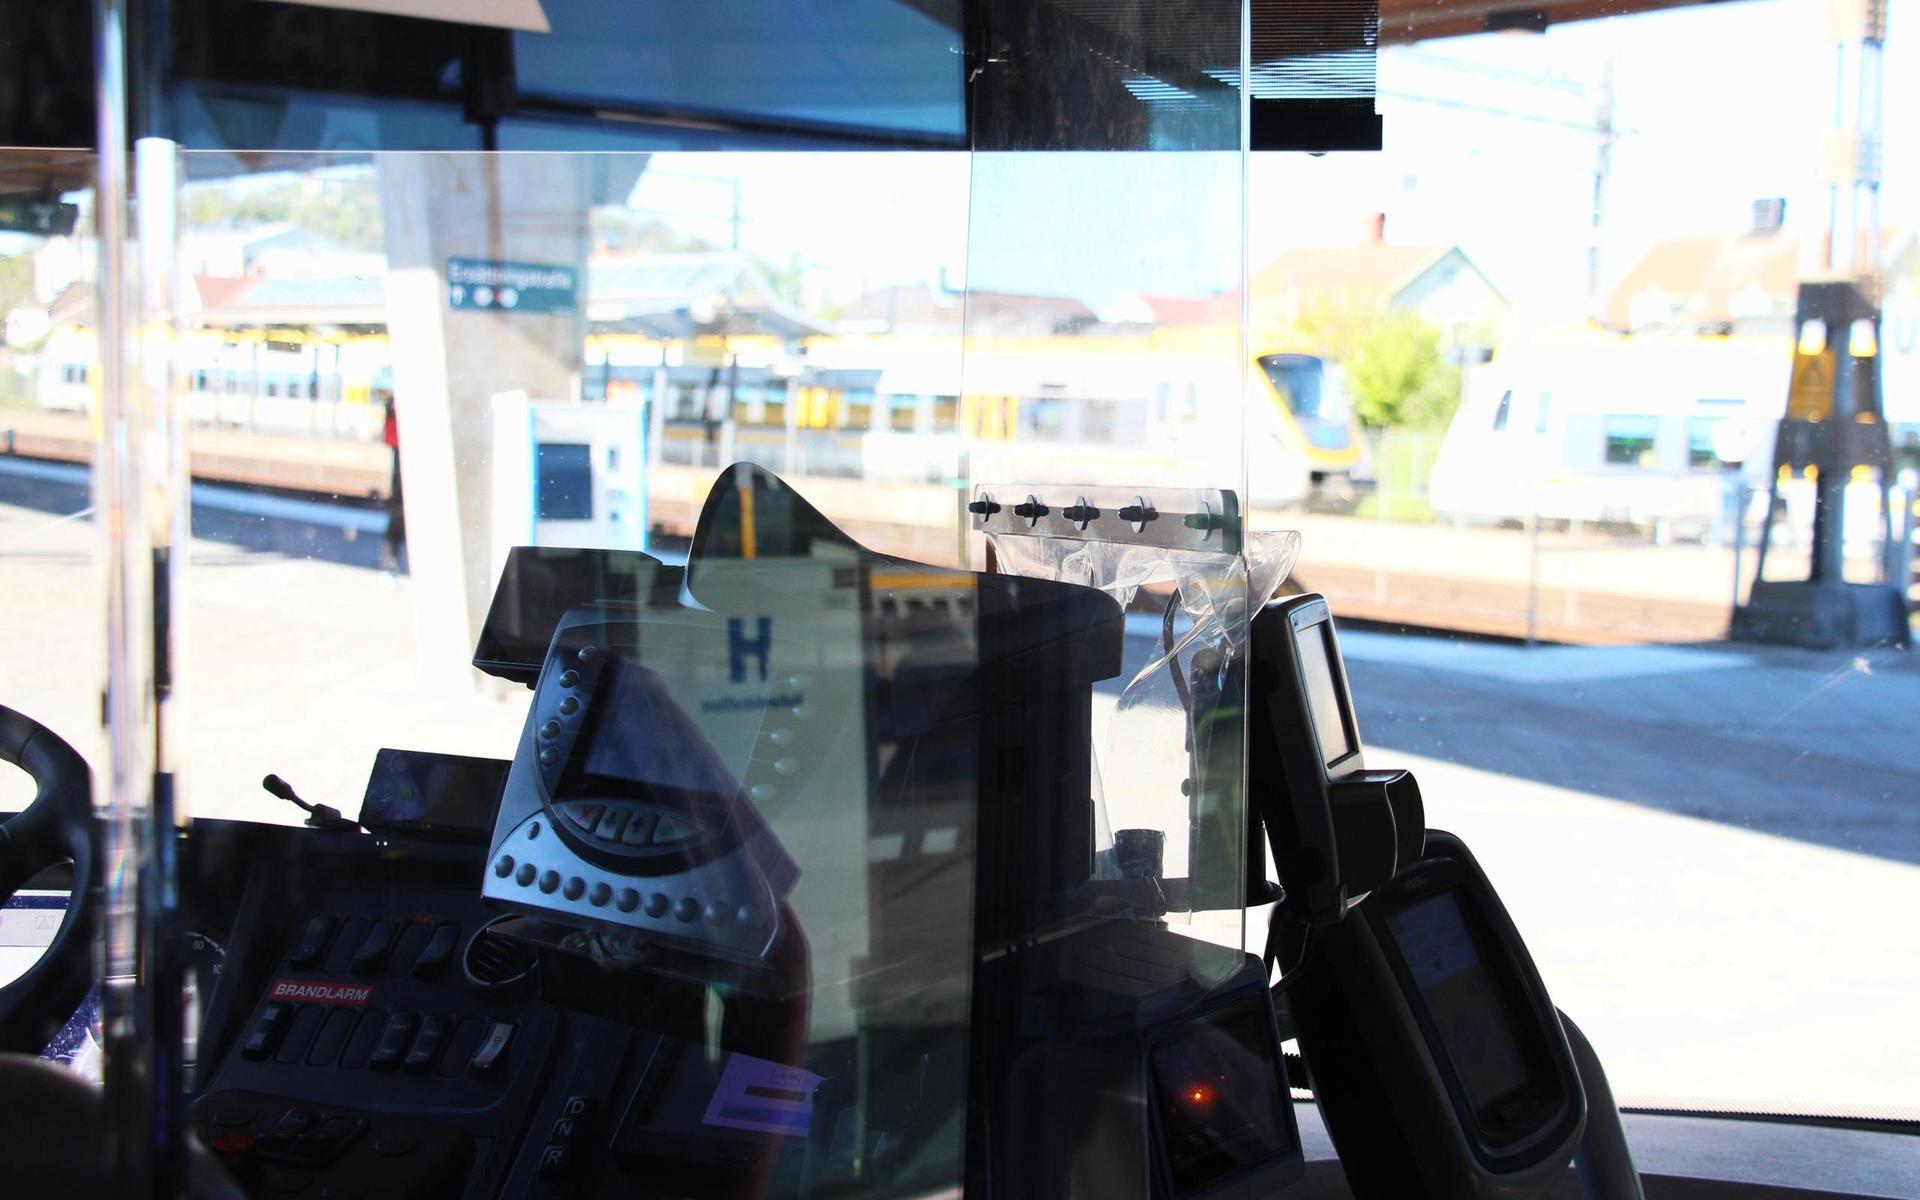 Sedan 9 maj har Nobinas bussar i Kungsbacka kört med öppen framdörr. 